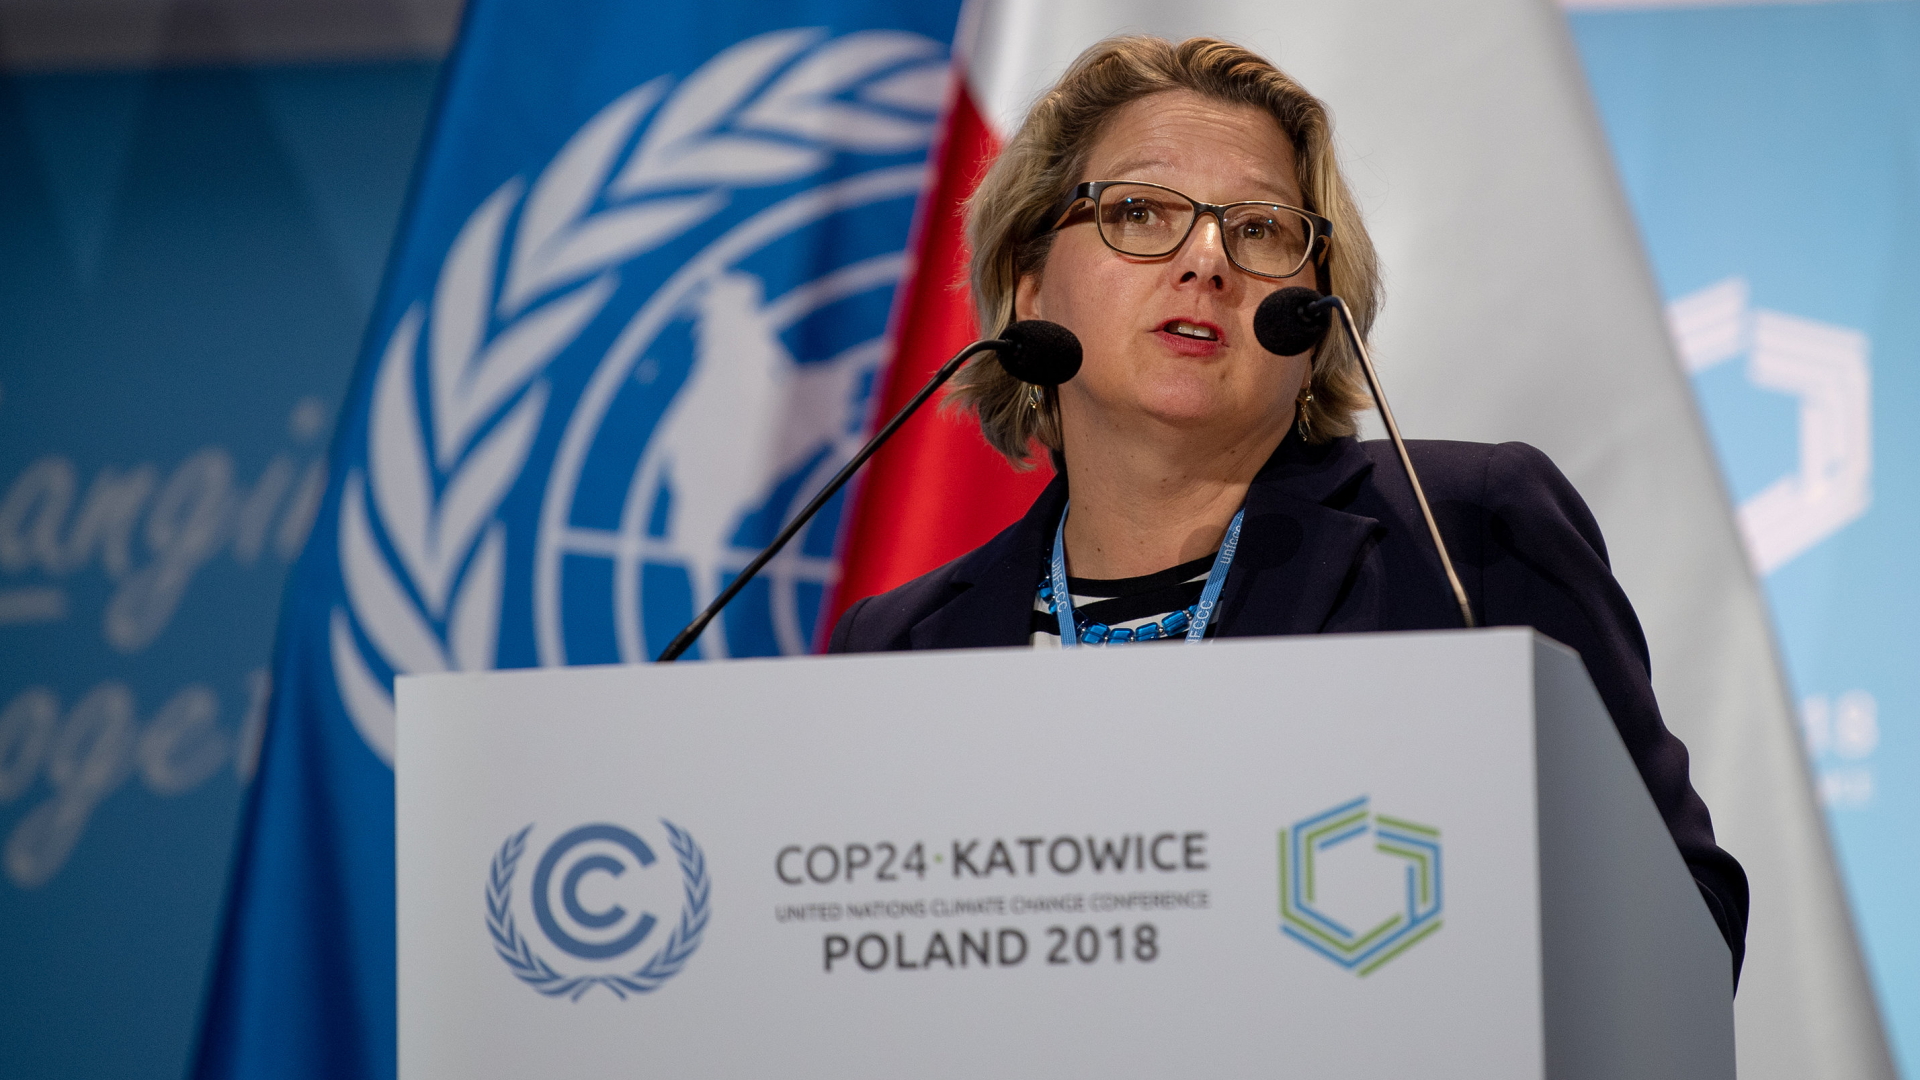 Umweltministerin Svenja Schulze beim Klimagipfel in Kattowitz | Bildquelle: dpa